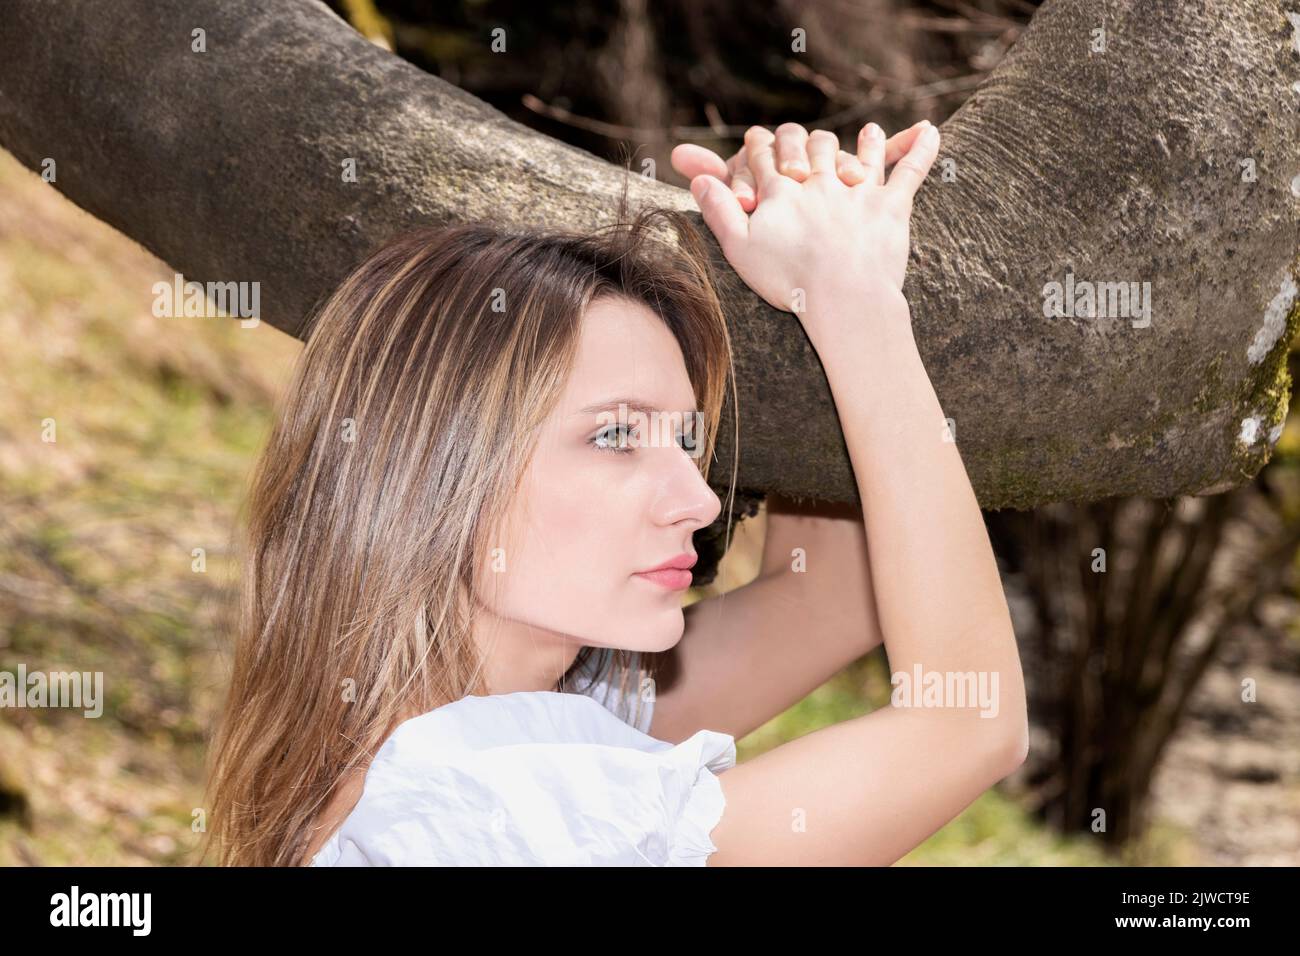 jolie femme blonde embrassant une branche d'arbre dans une robe blanche Banque D'Images